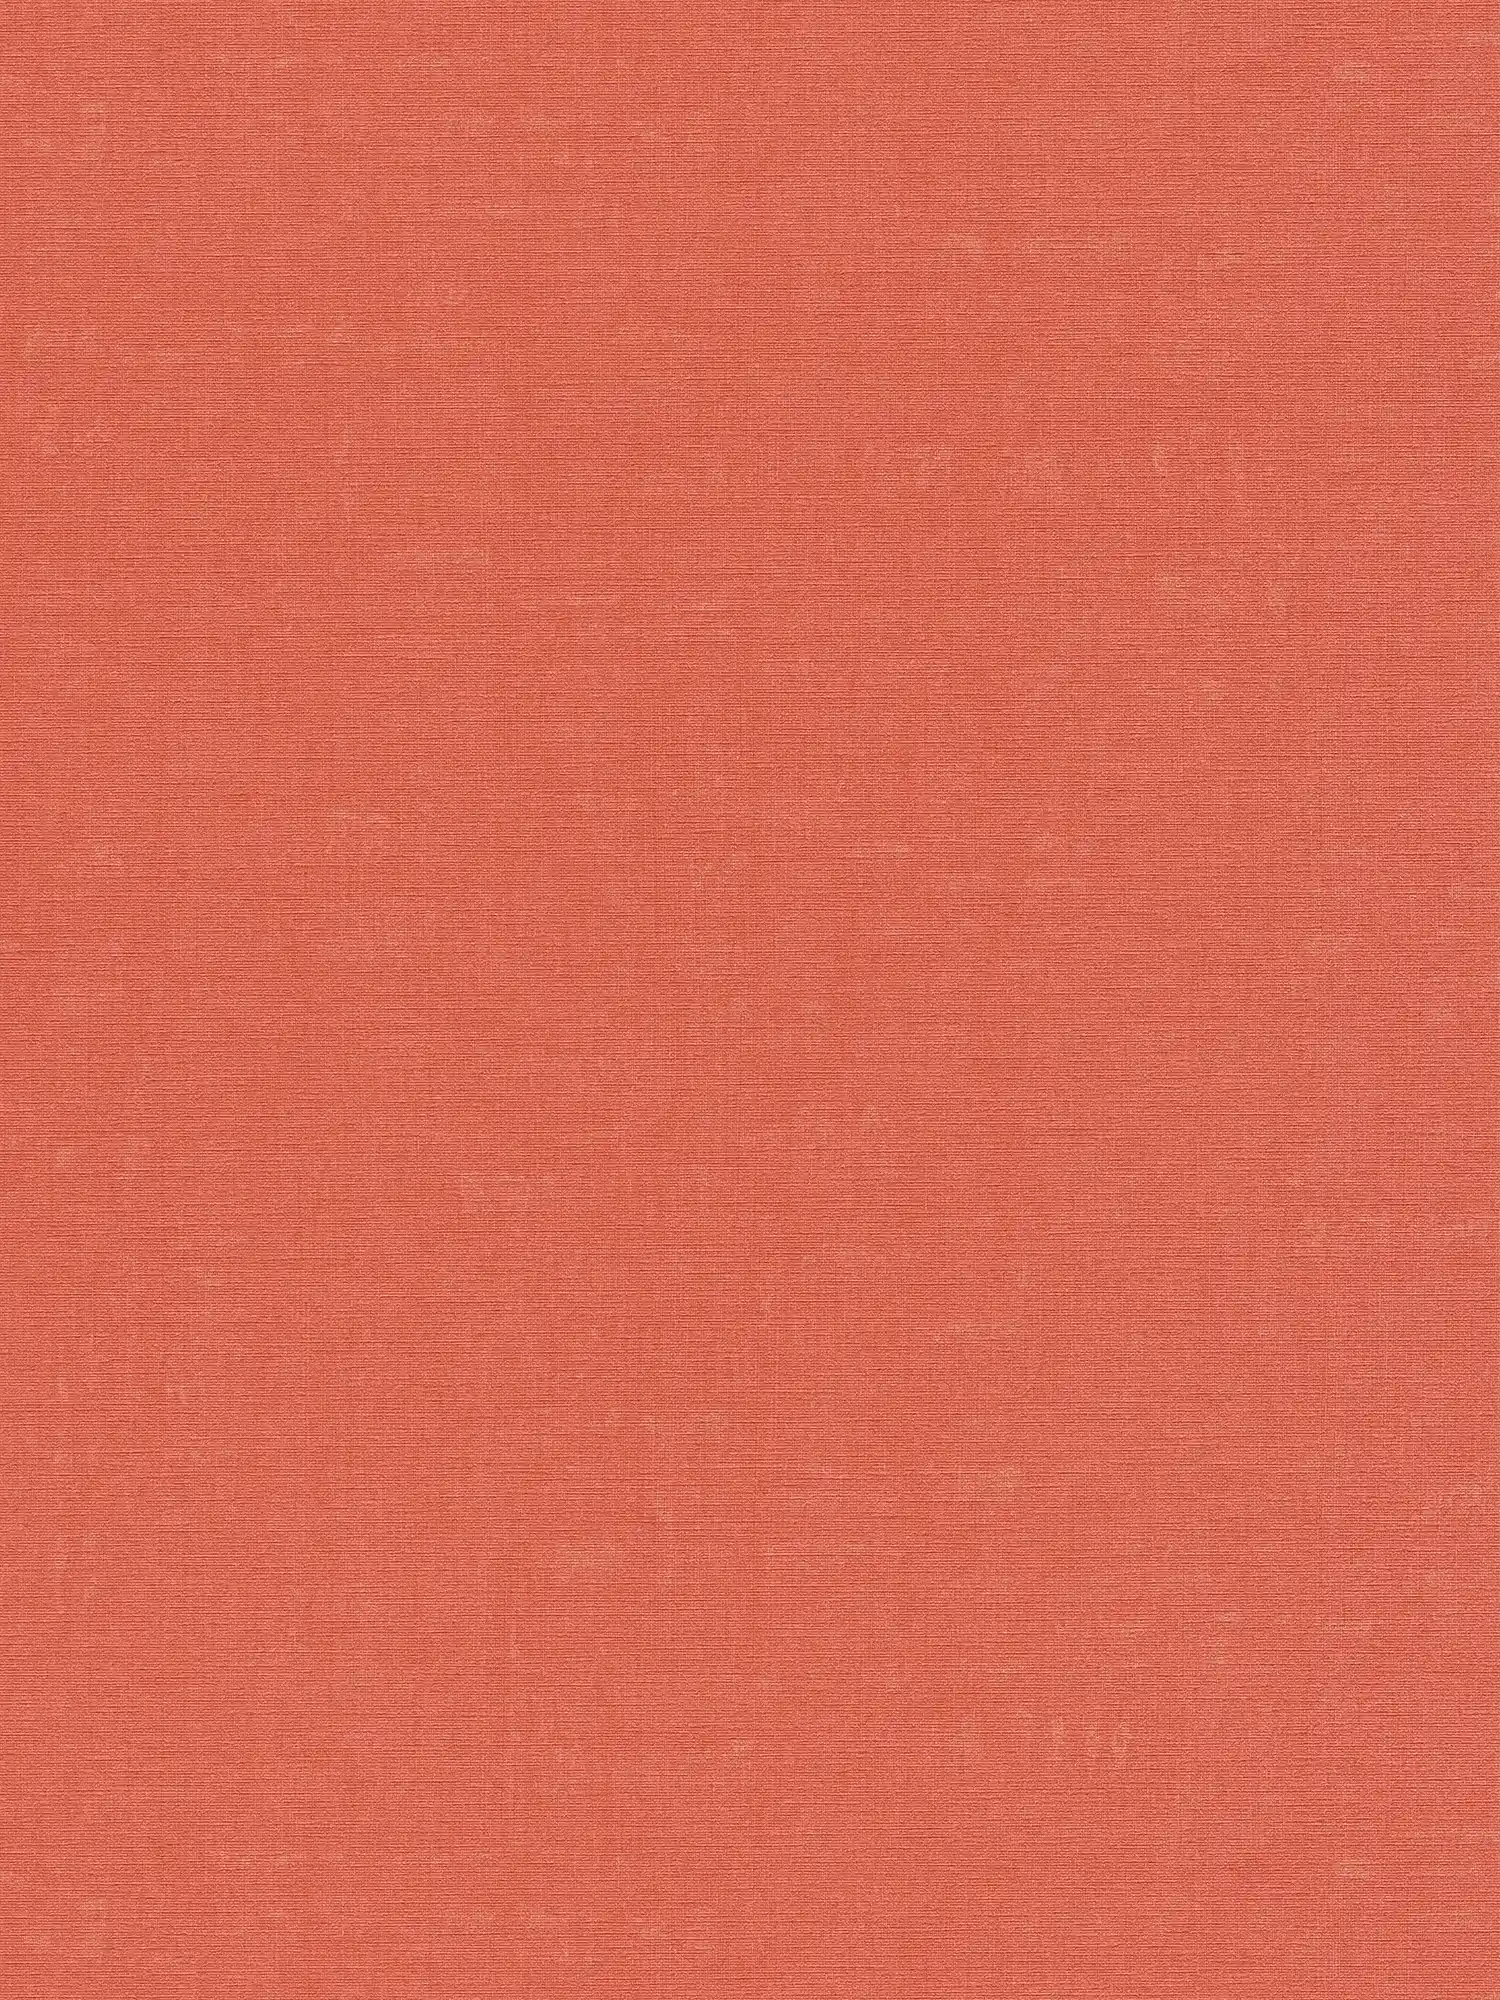 Effen behang met gevlekt patroon - oranje, rood
